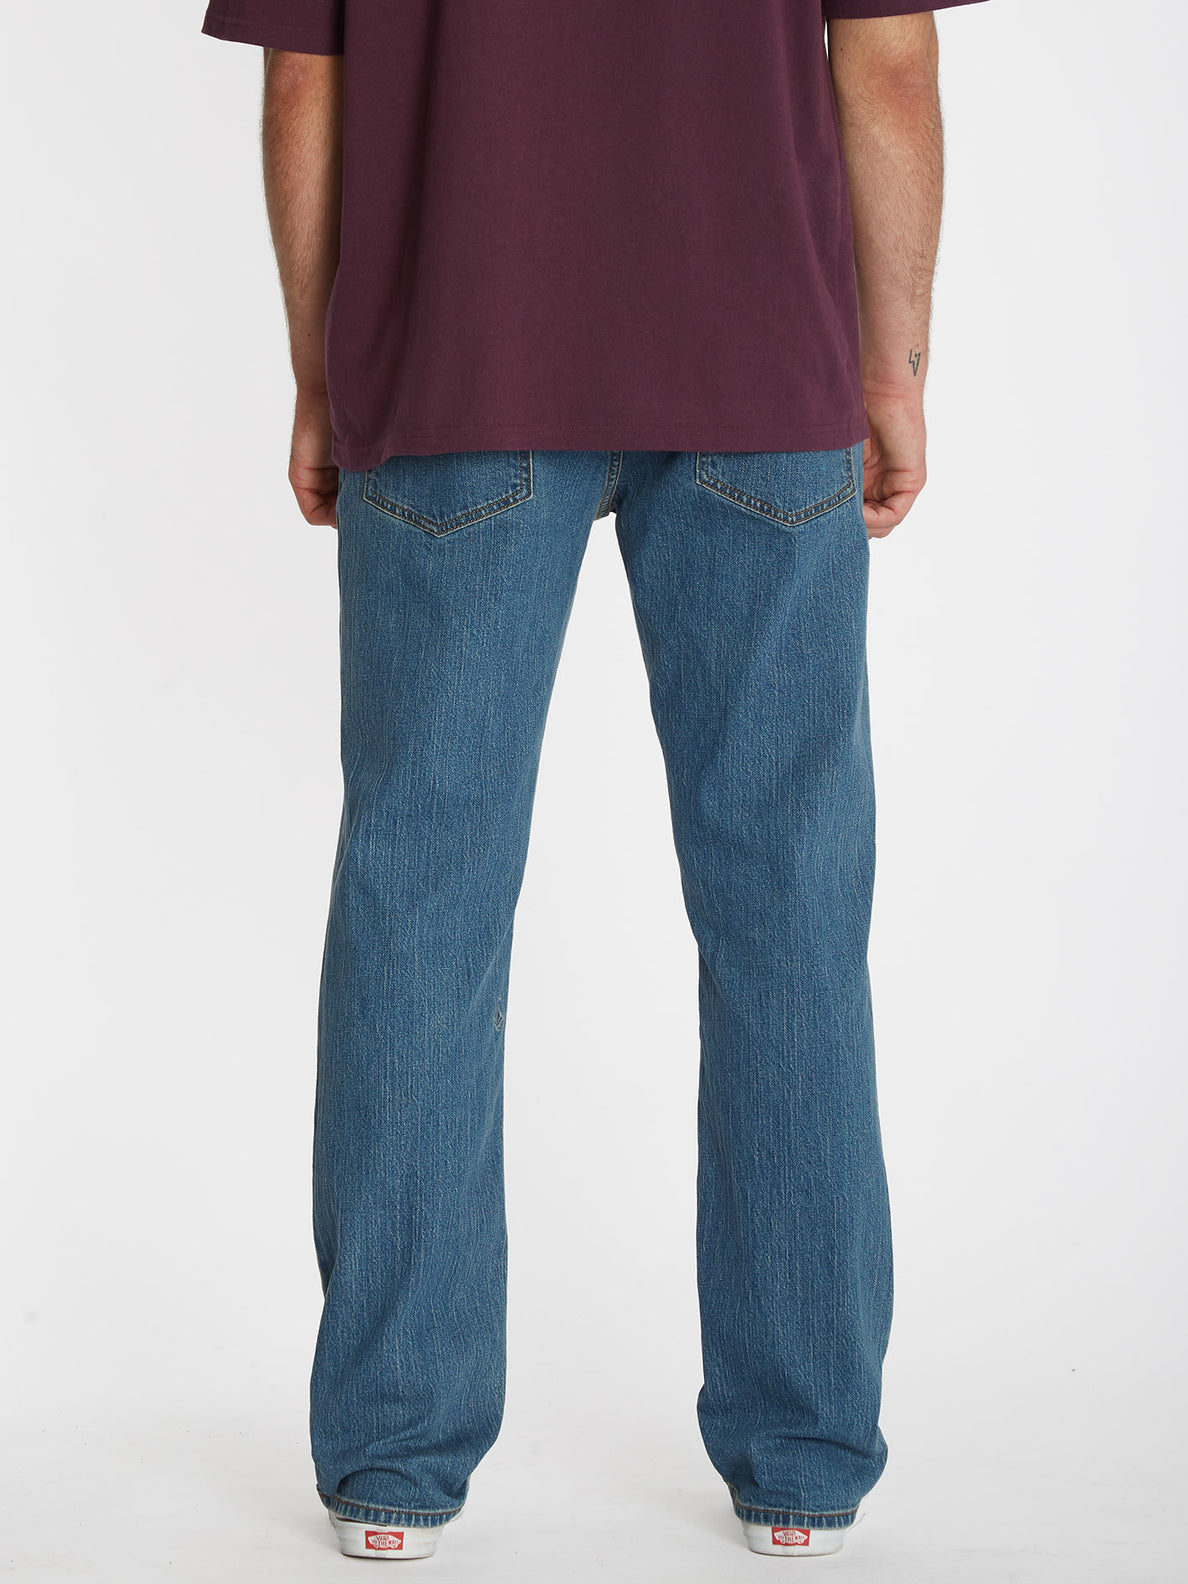 Solver Jeans - AGED INDIGO (A1912303_AIN) [10]